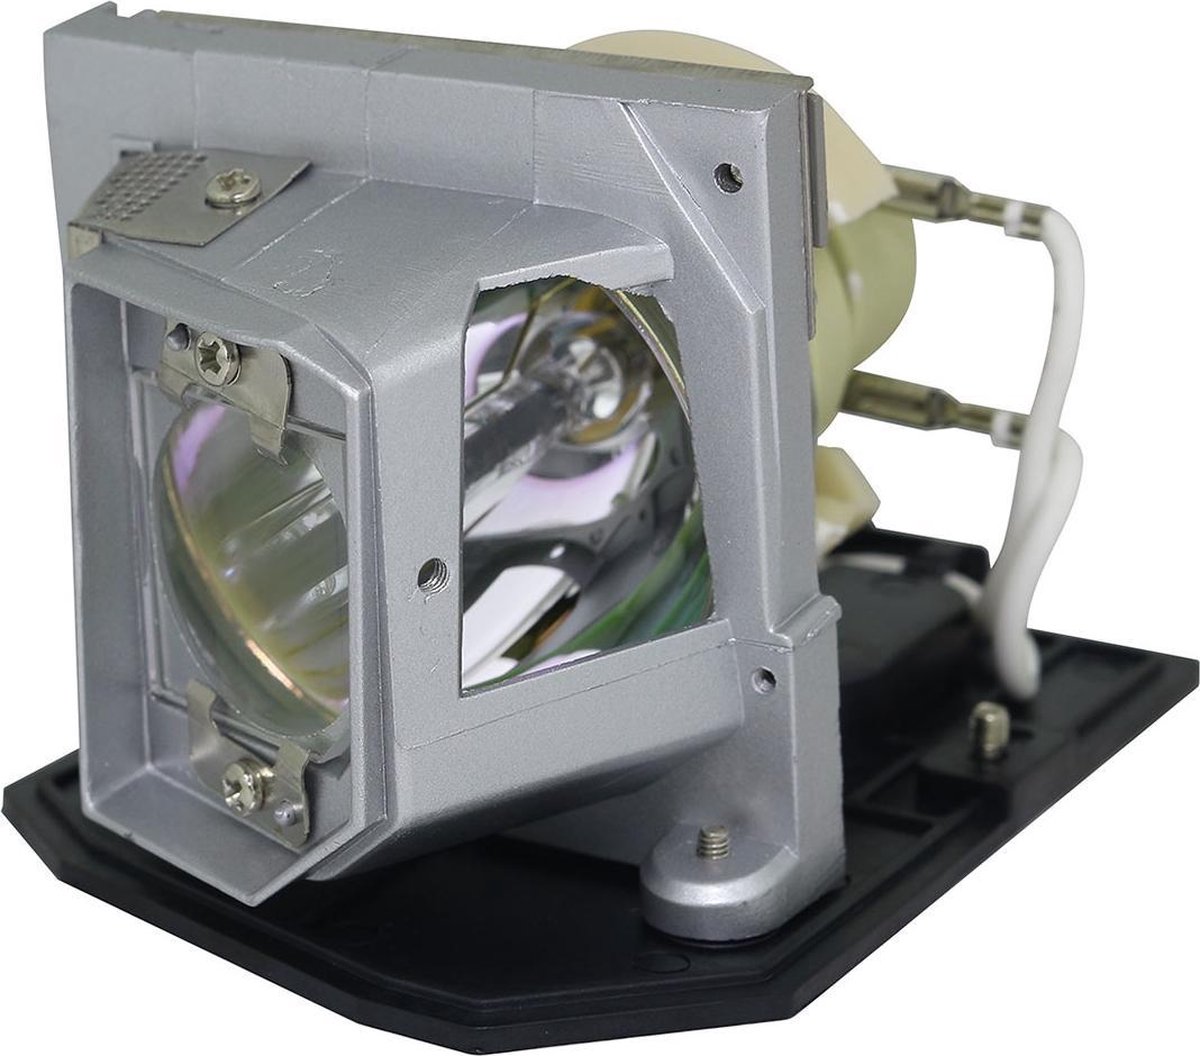 Beamerlamp geschikt voor de OPTOMA HD20-LV - SERIAL Q8NJ beamer, lamp code BL-FP230J / SP.8MQ01GC01. Bevat originele P-VIP lamp, prestaties gelijk aan origineel. - QualityLamp